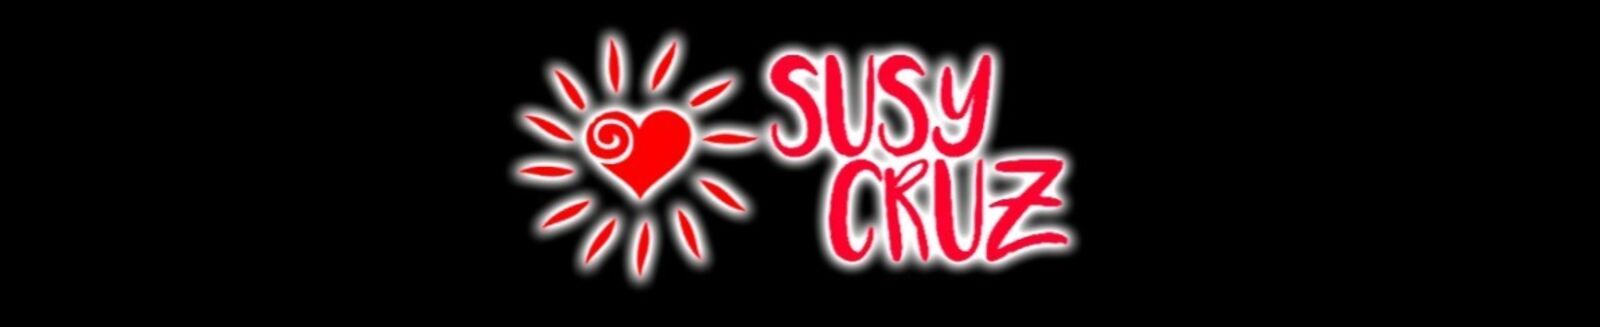 See Susy Cruz profile